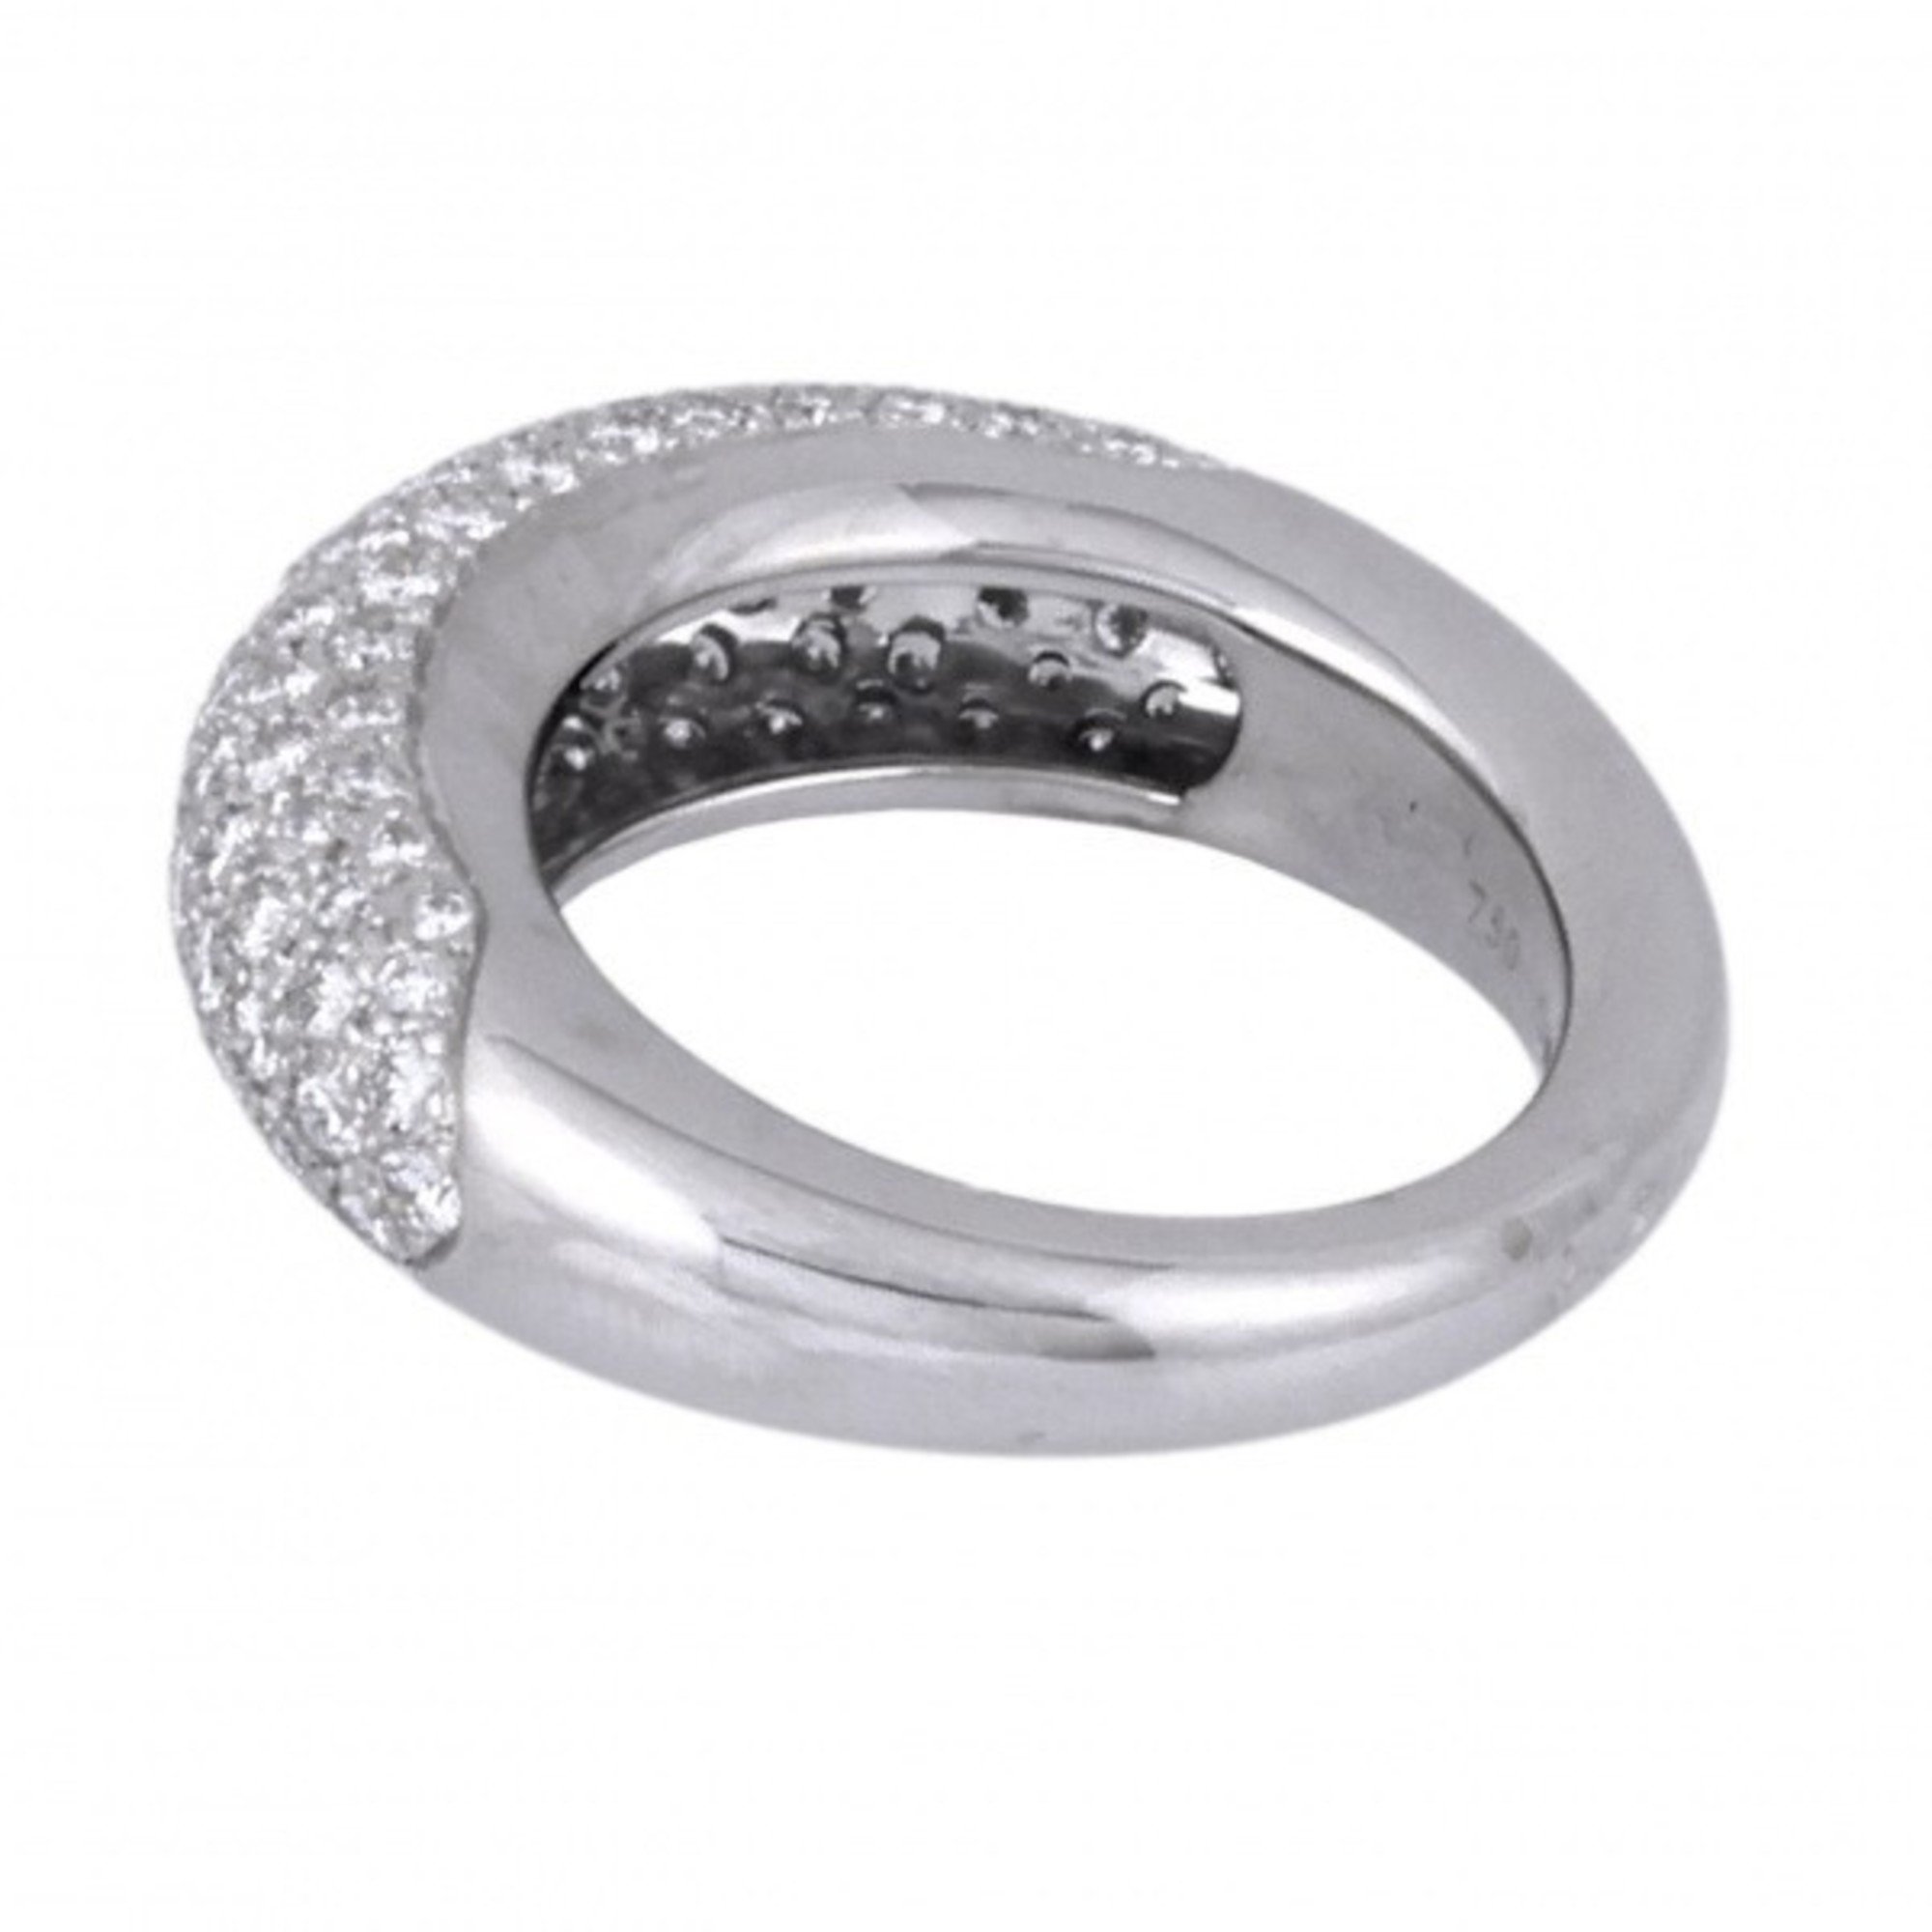 Chaumet Anau Caviar Ring K18WG White gold